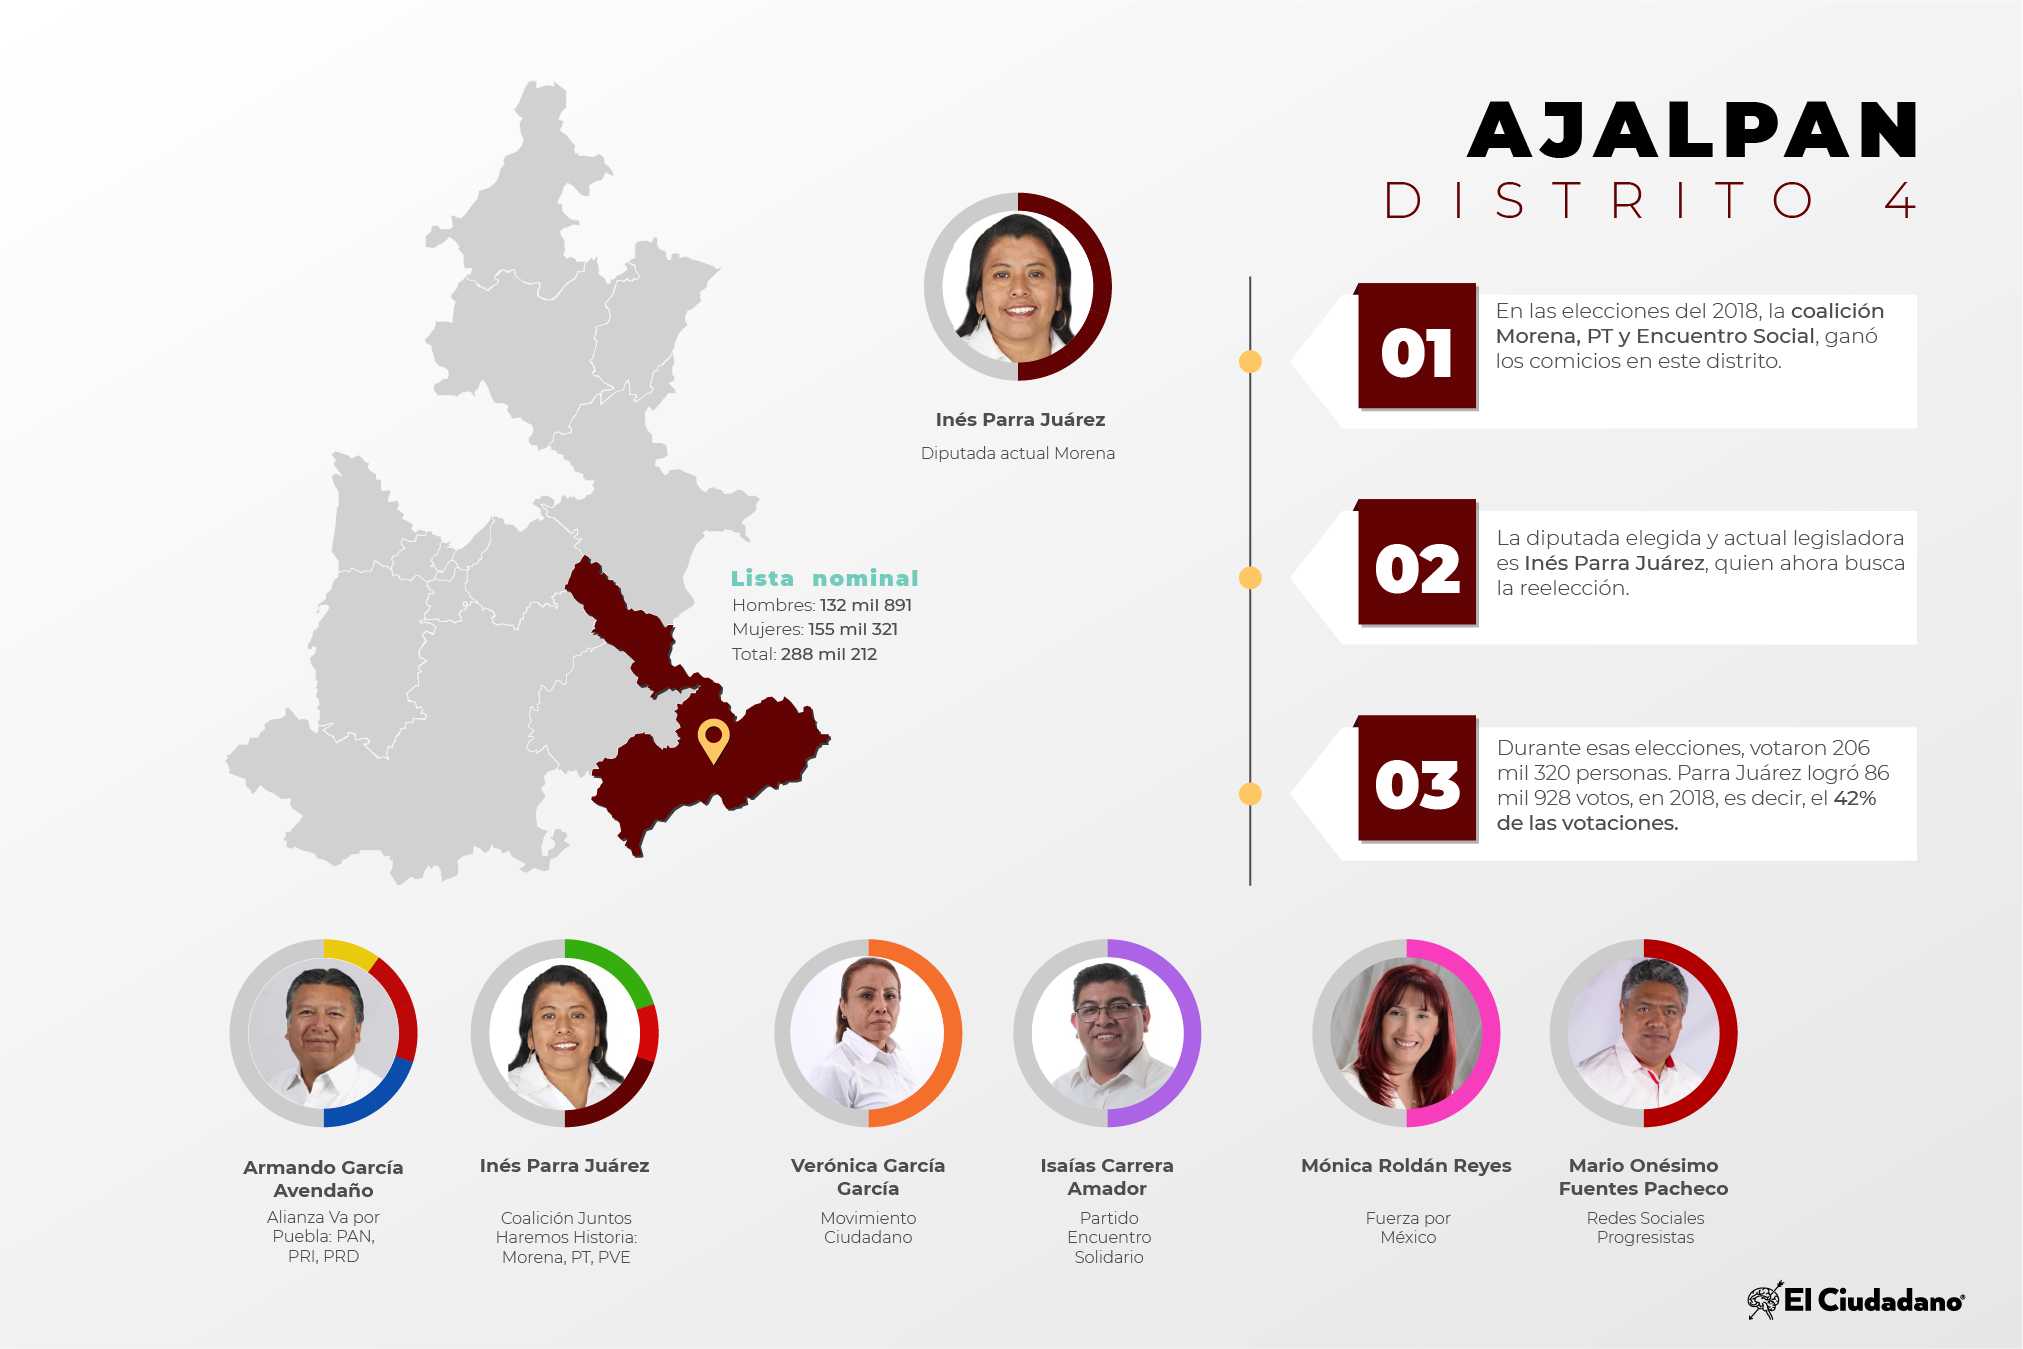 Radiografía de distritos electorales federales: Distrito 4, Ajalpan